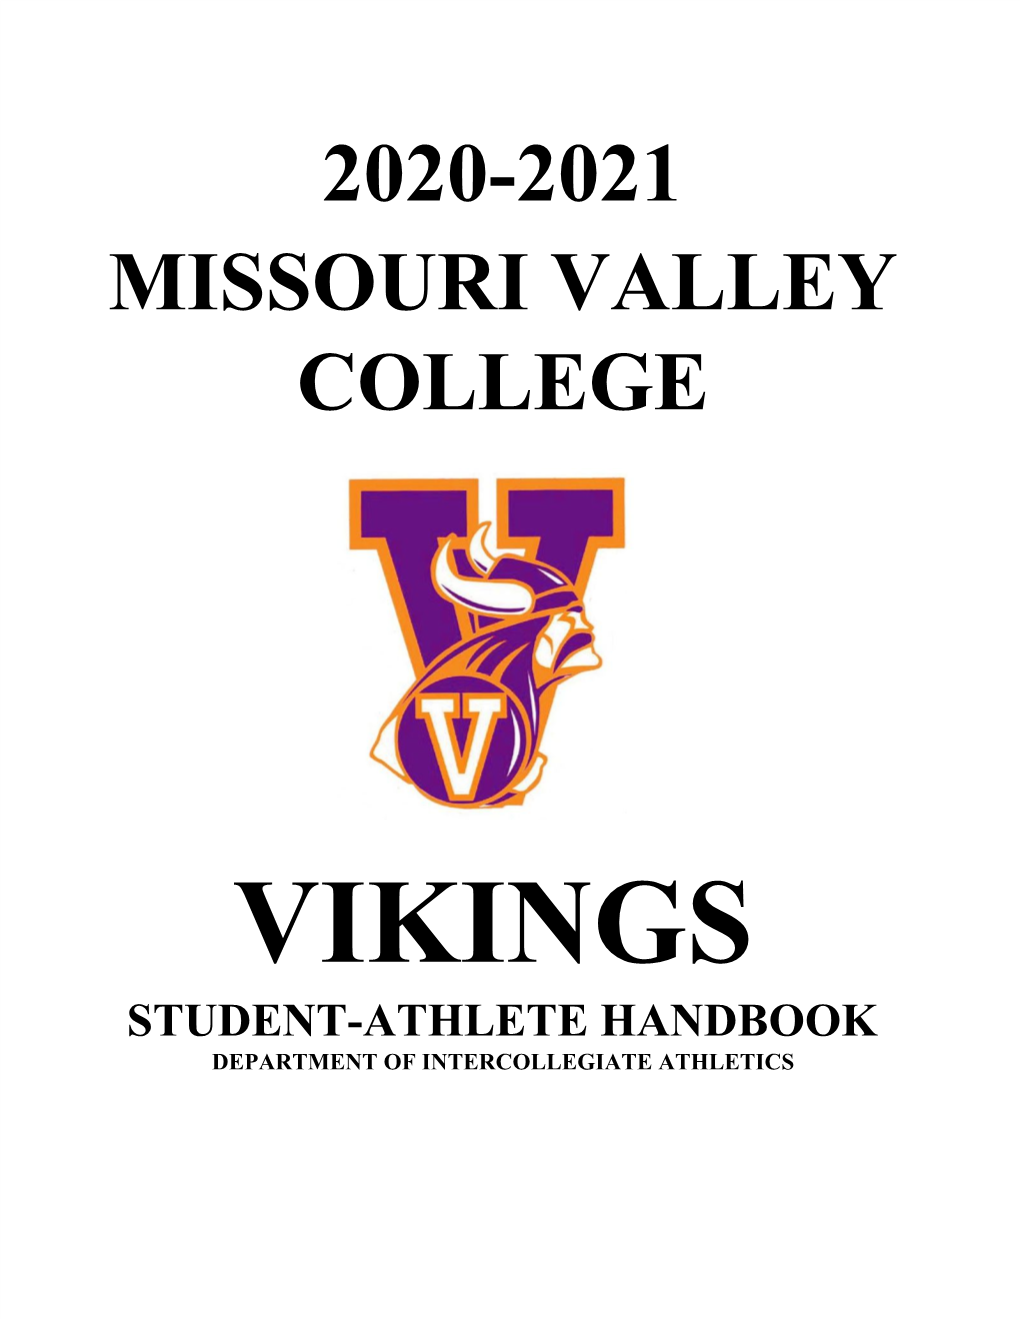 2020-2021 Missouri Valley College